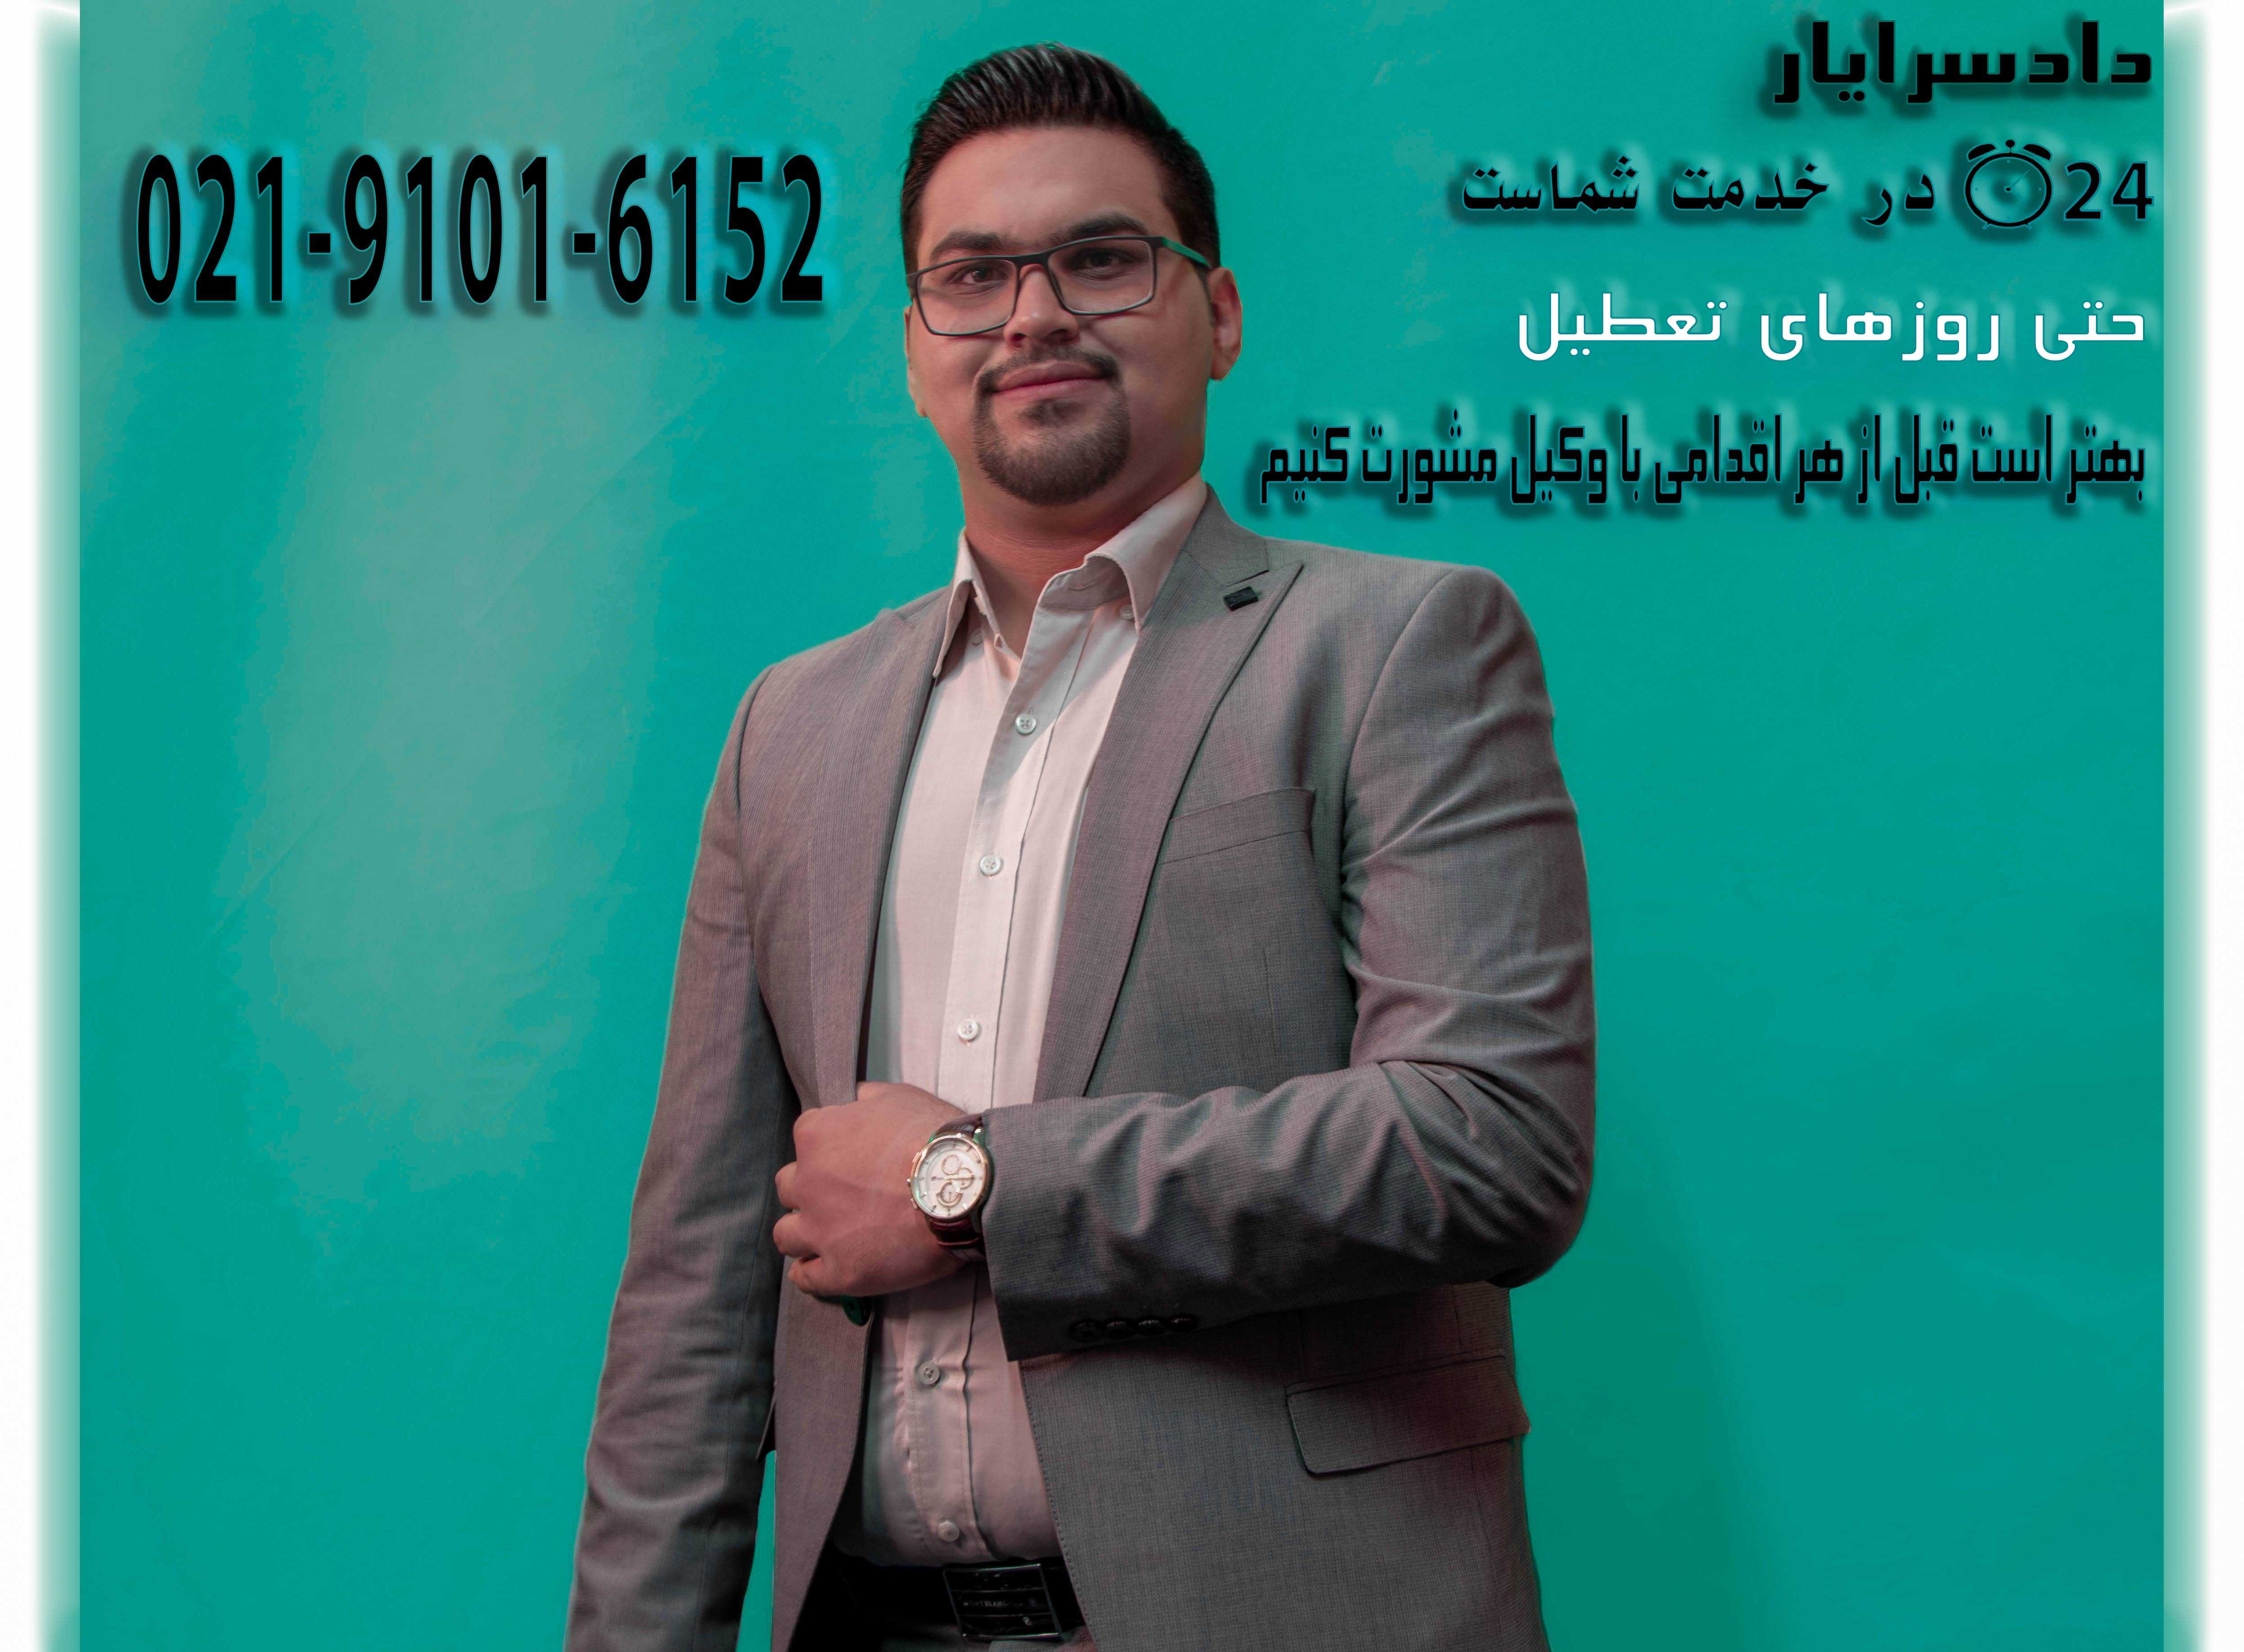 وکیل فریب در ازدواج در شیراز+مشاوره تلفنی 24 ساعته فوری و رایگان